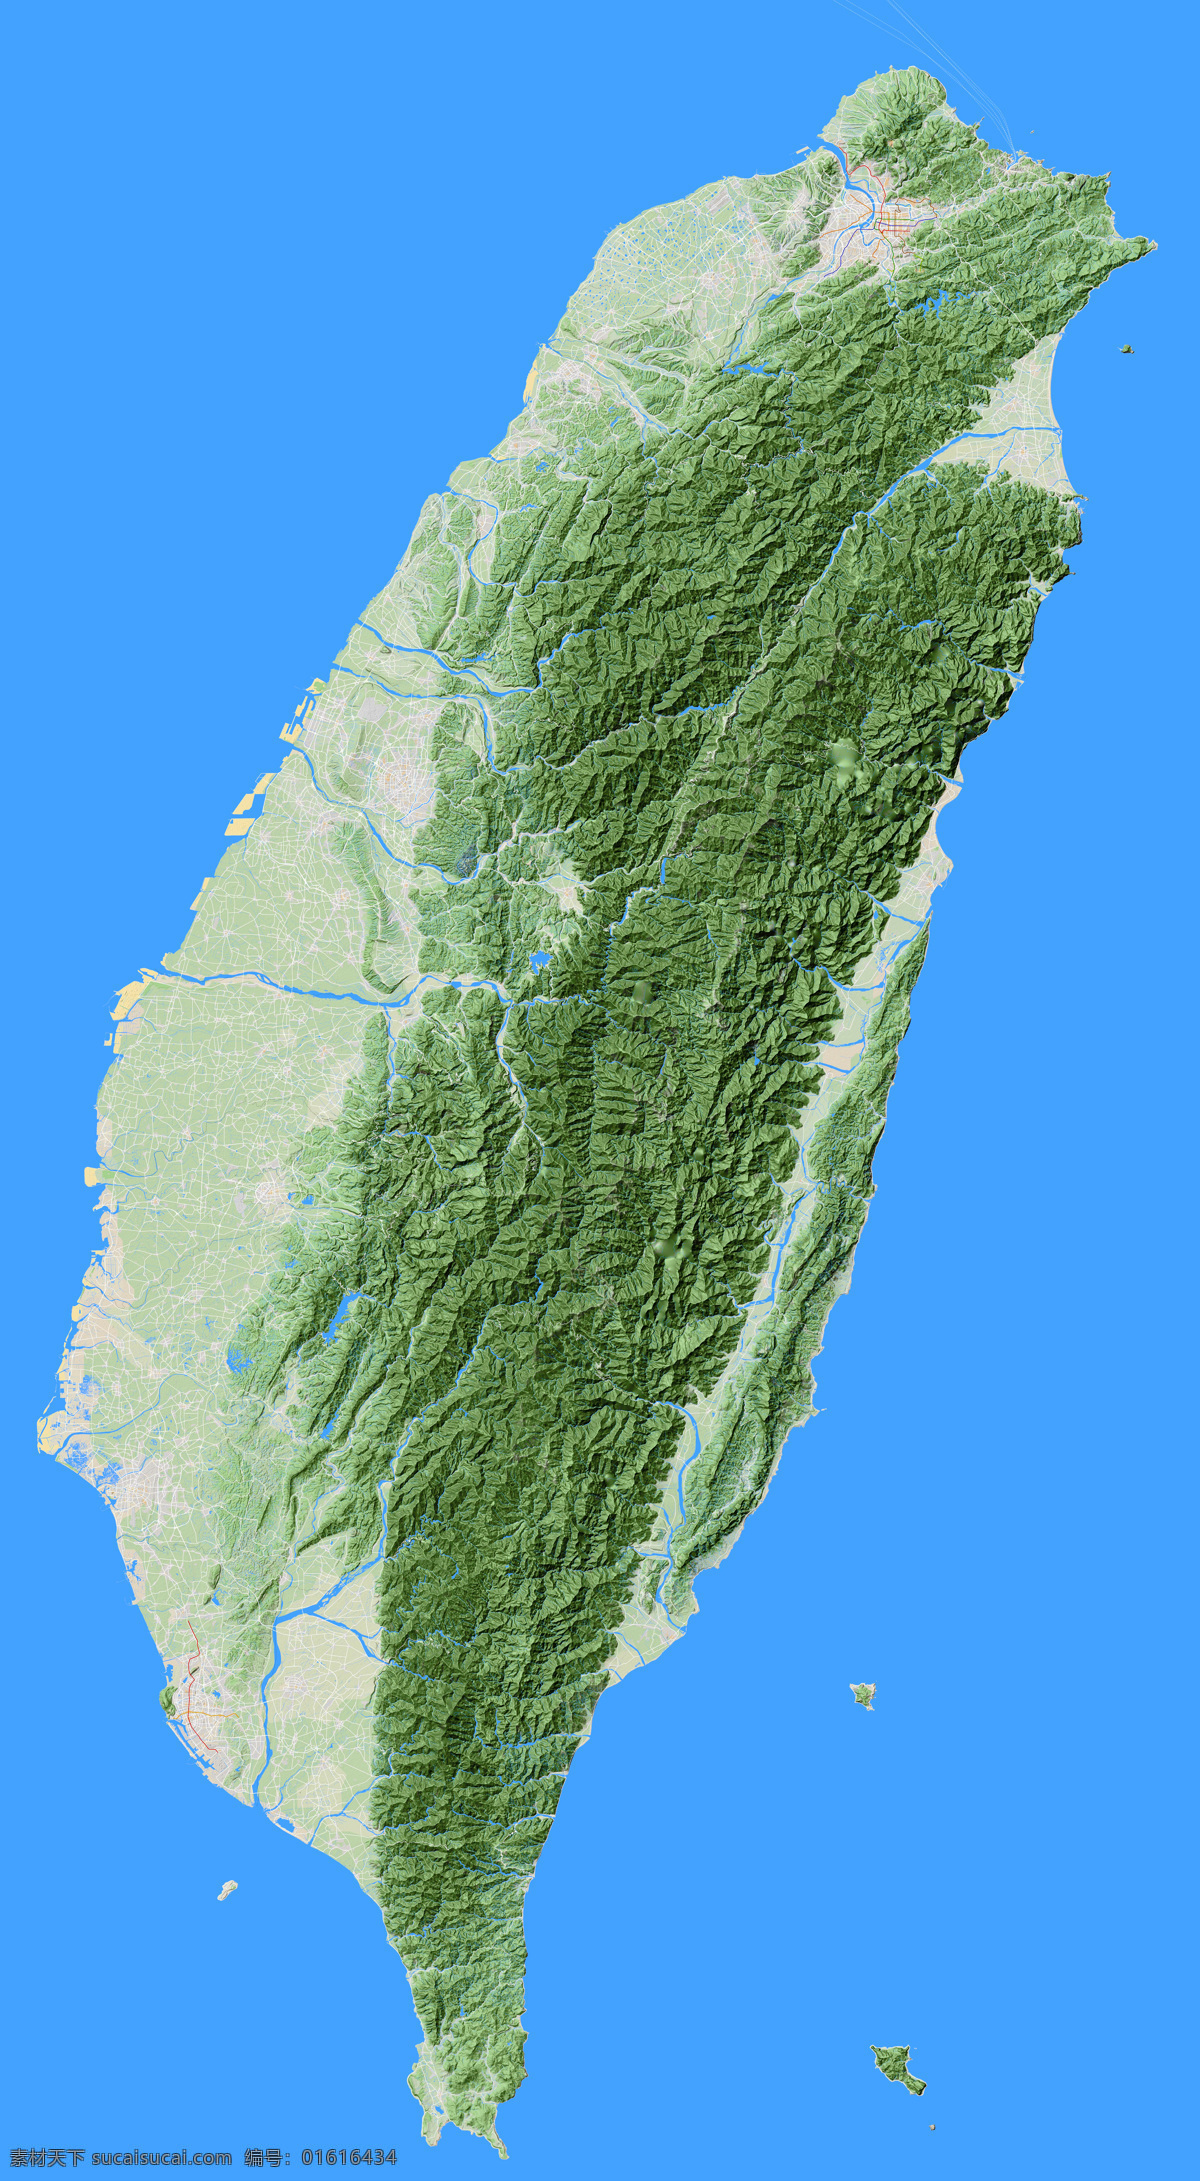 台湾省地形图 台湾 地形图 亚洲 欧洲 非洲 美洲 澳洲 南极洲 上帝之眼 卫星图 俯视图 nasa 地中海 海洋 山地 西西里岛 撒丁岛 阿尔卑斯山 南欧 东欧 地球 自然景观 自然风景